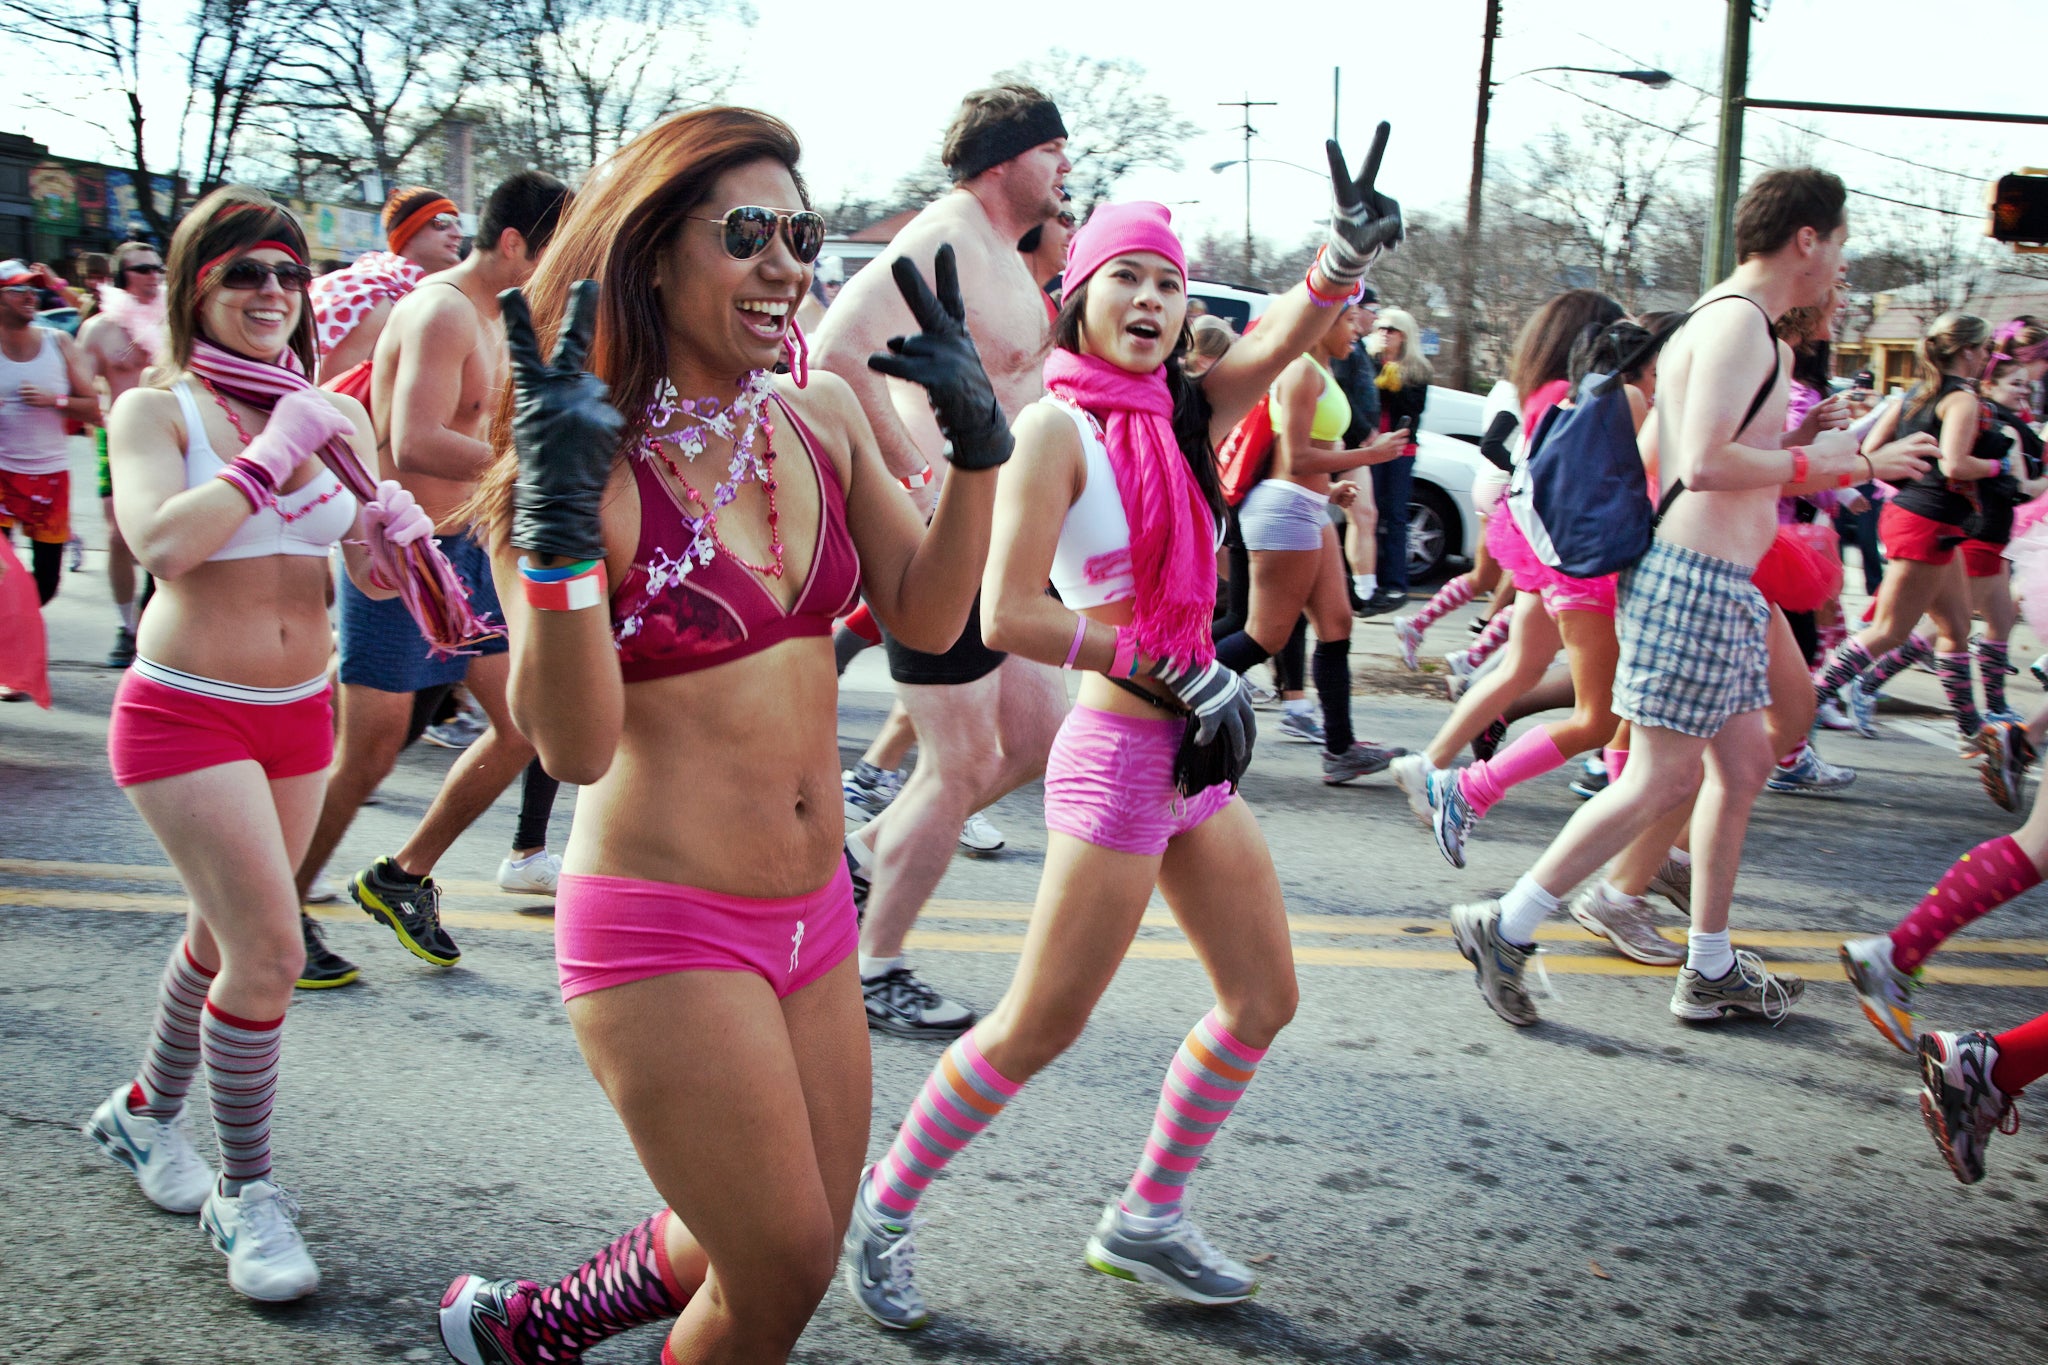 Watch underwear race at Cupid's Undie Run in Tremont: Live video